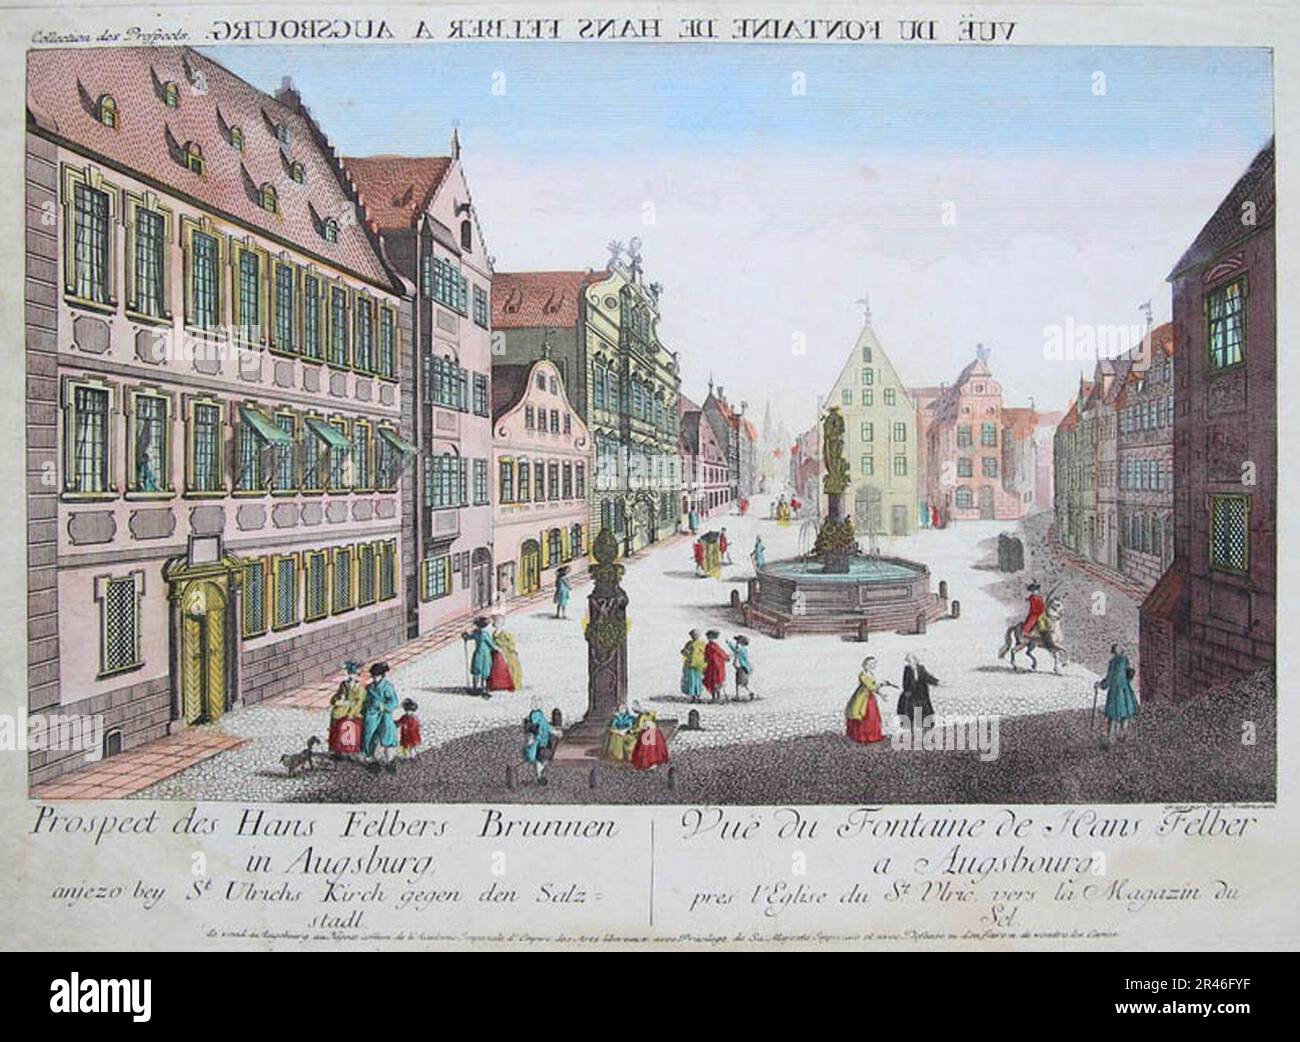 Ulrichsplatz with Hans Feber Fountain 1770-1780 Stock Photo